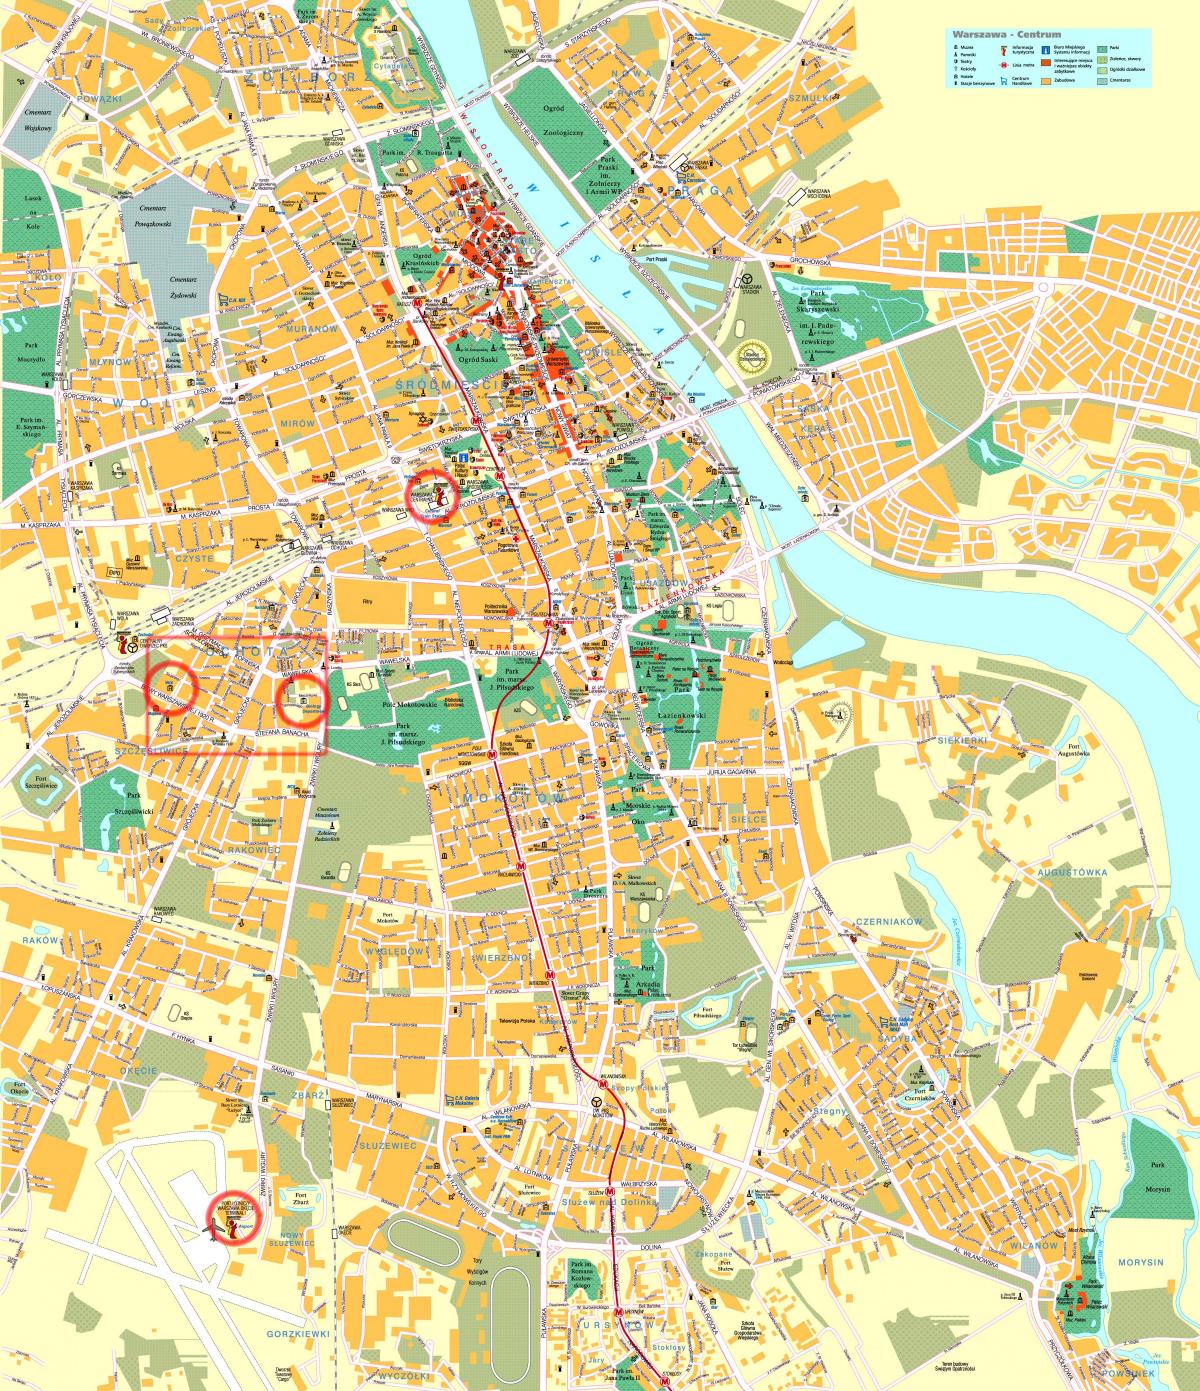 đường phố, bản đồ của Warsaw trung tâm thành phố